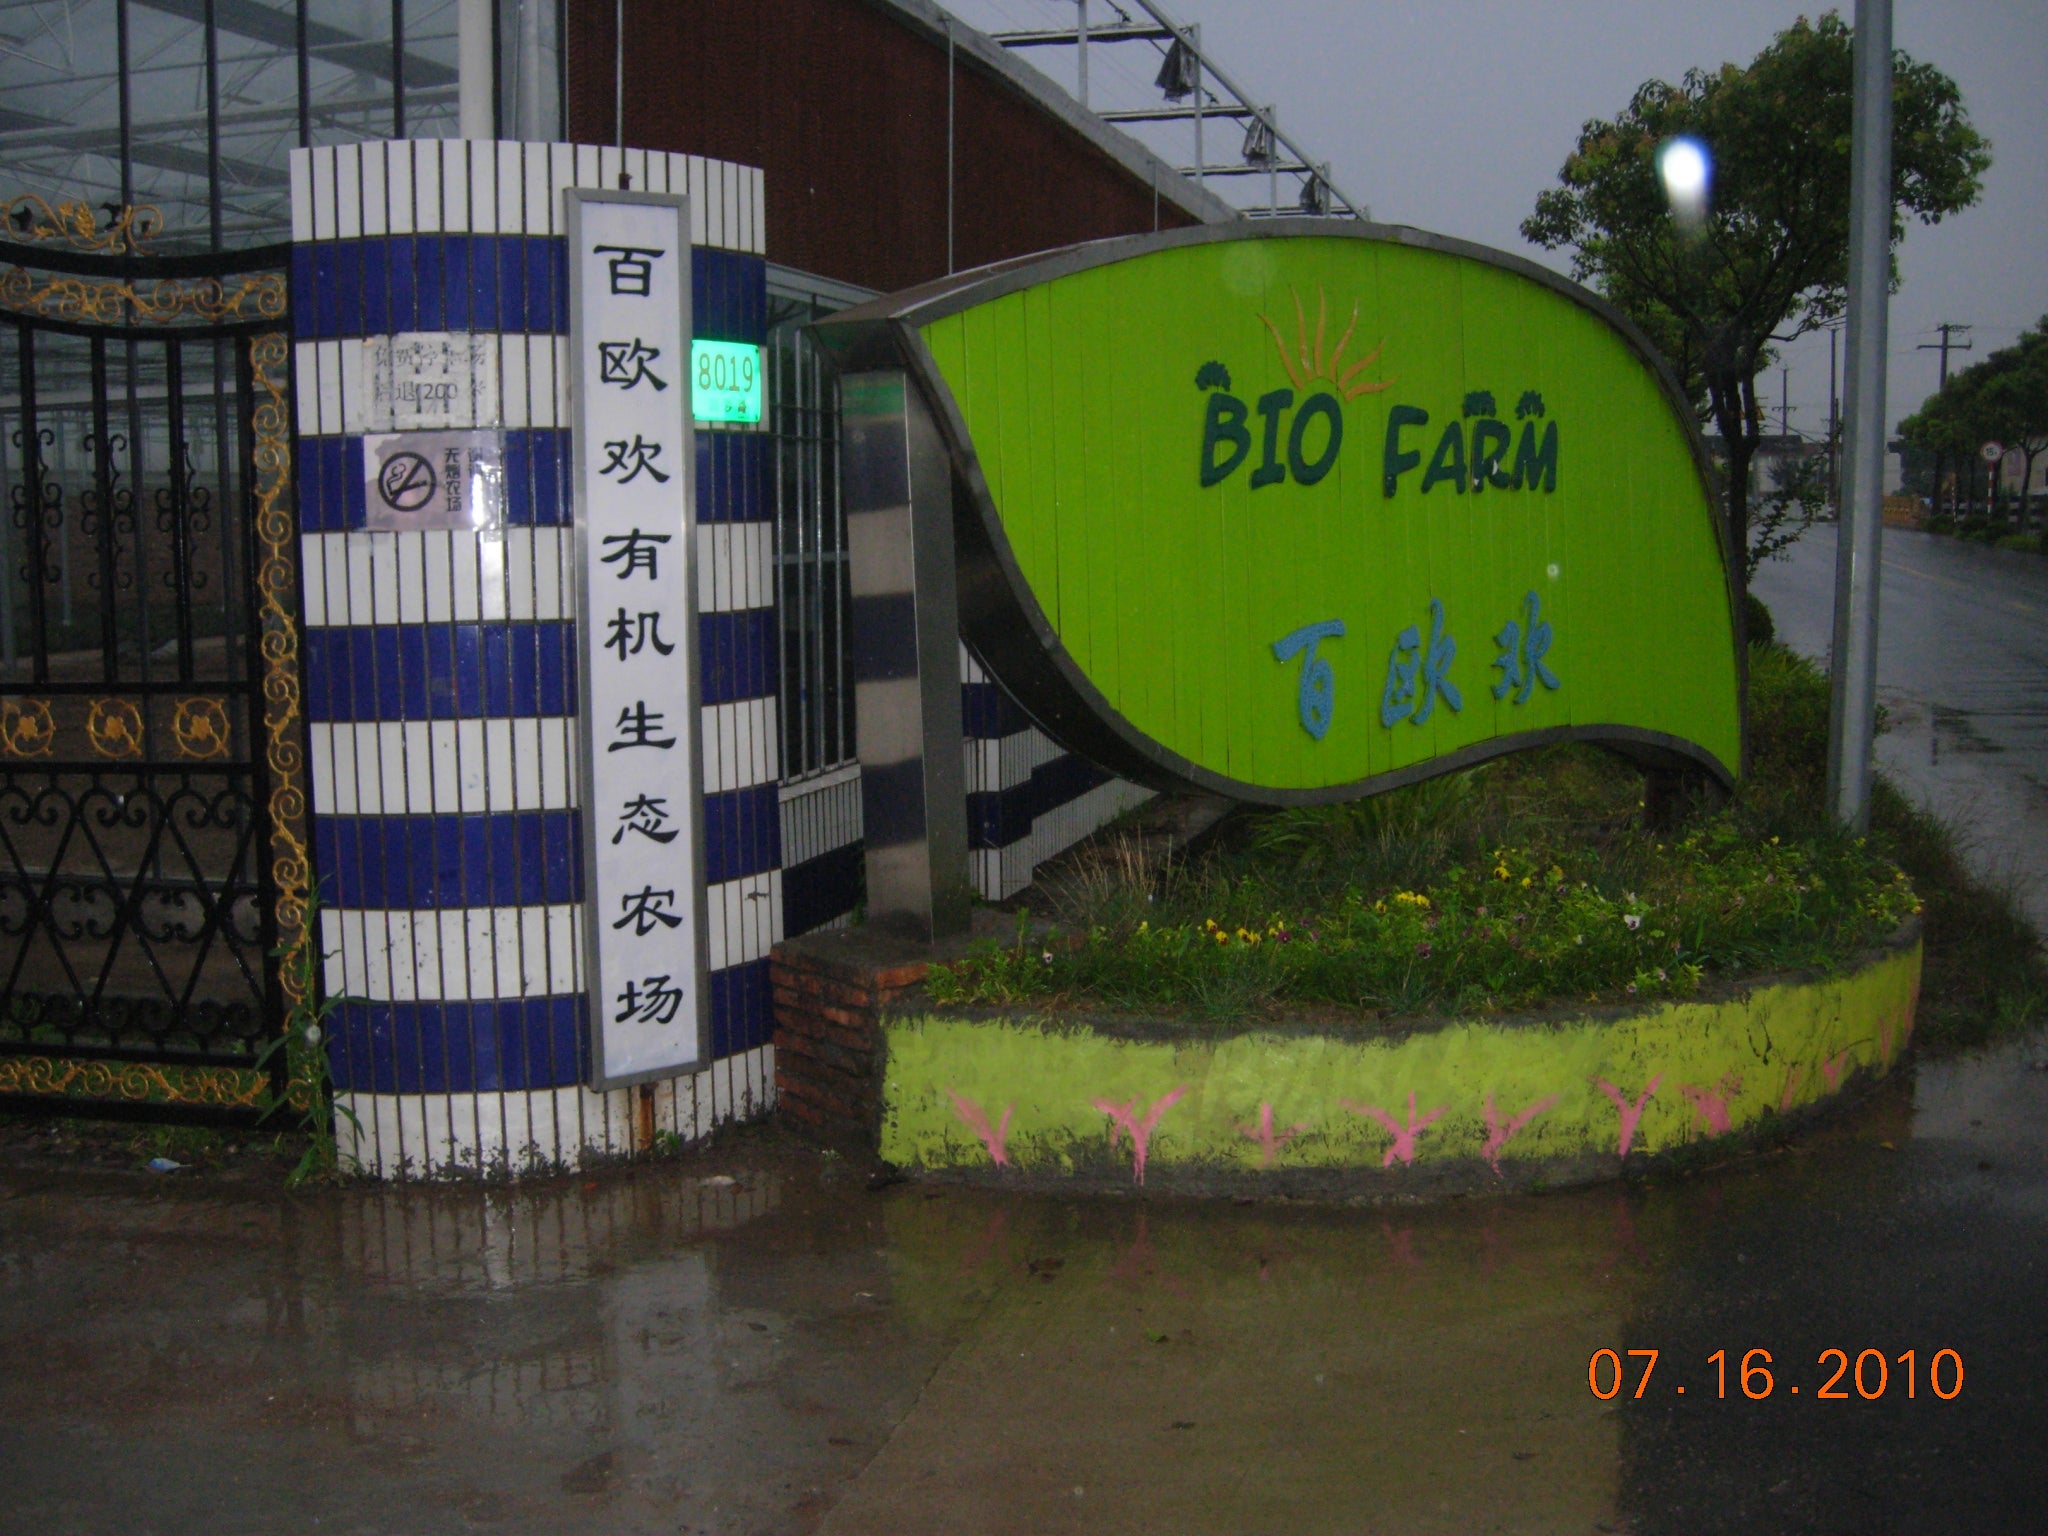 Biofarm at Shanghai